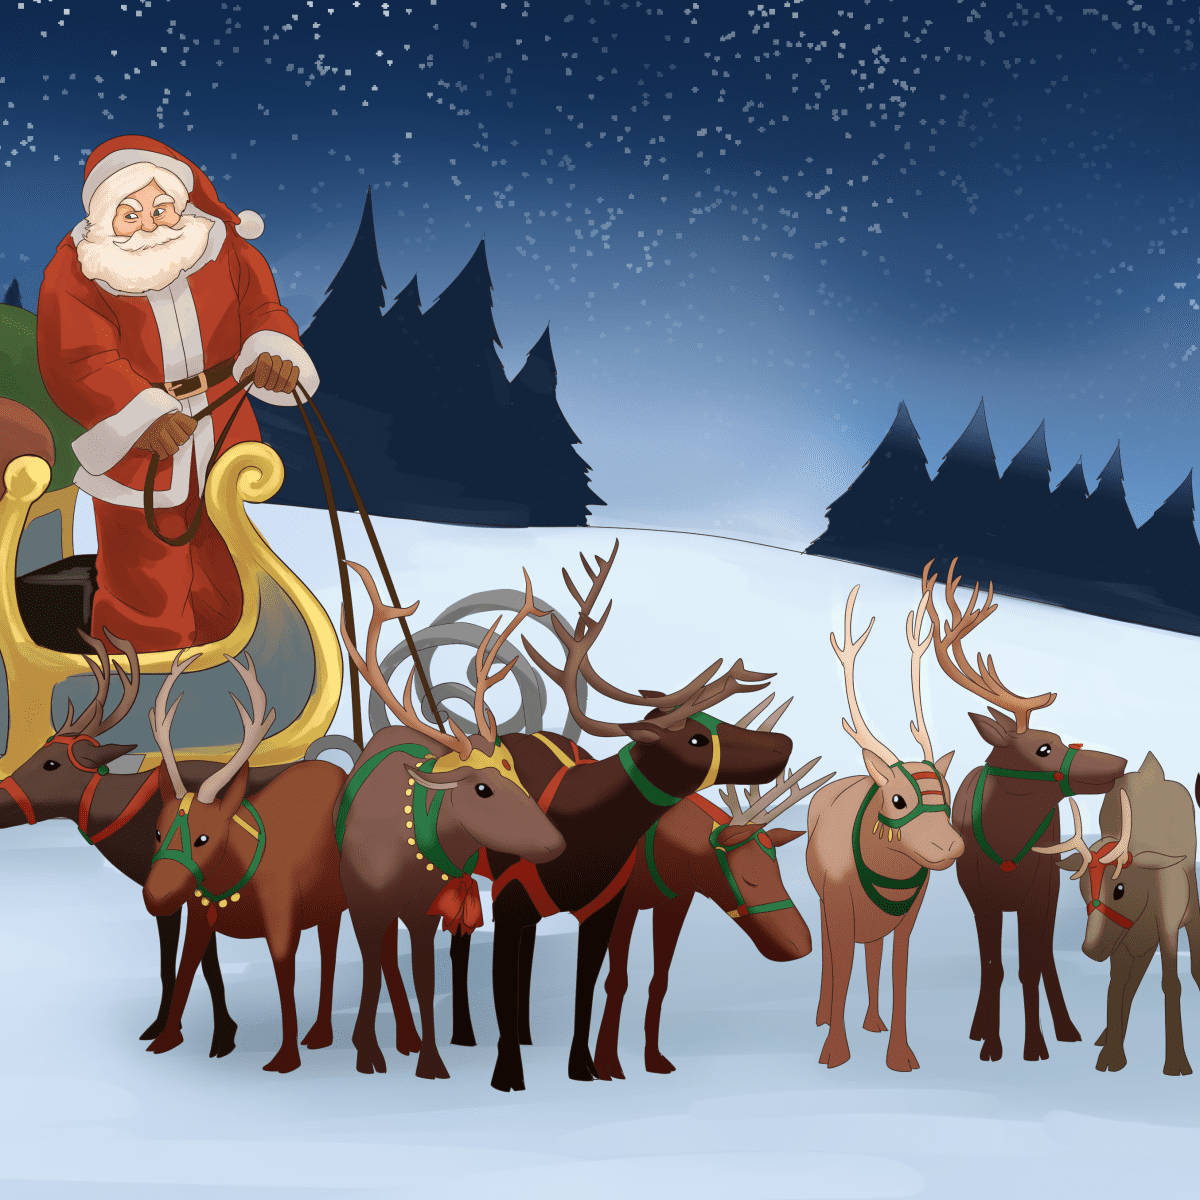 Christmas tree and santa on reindeer sleigh cookie cookie room-winter party